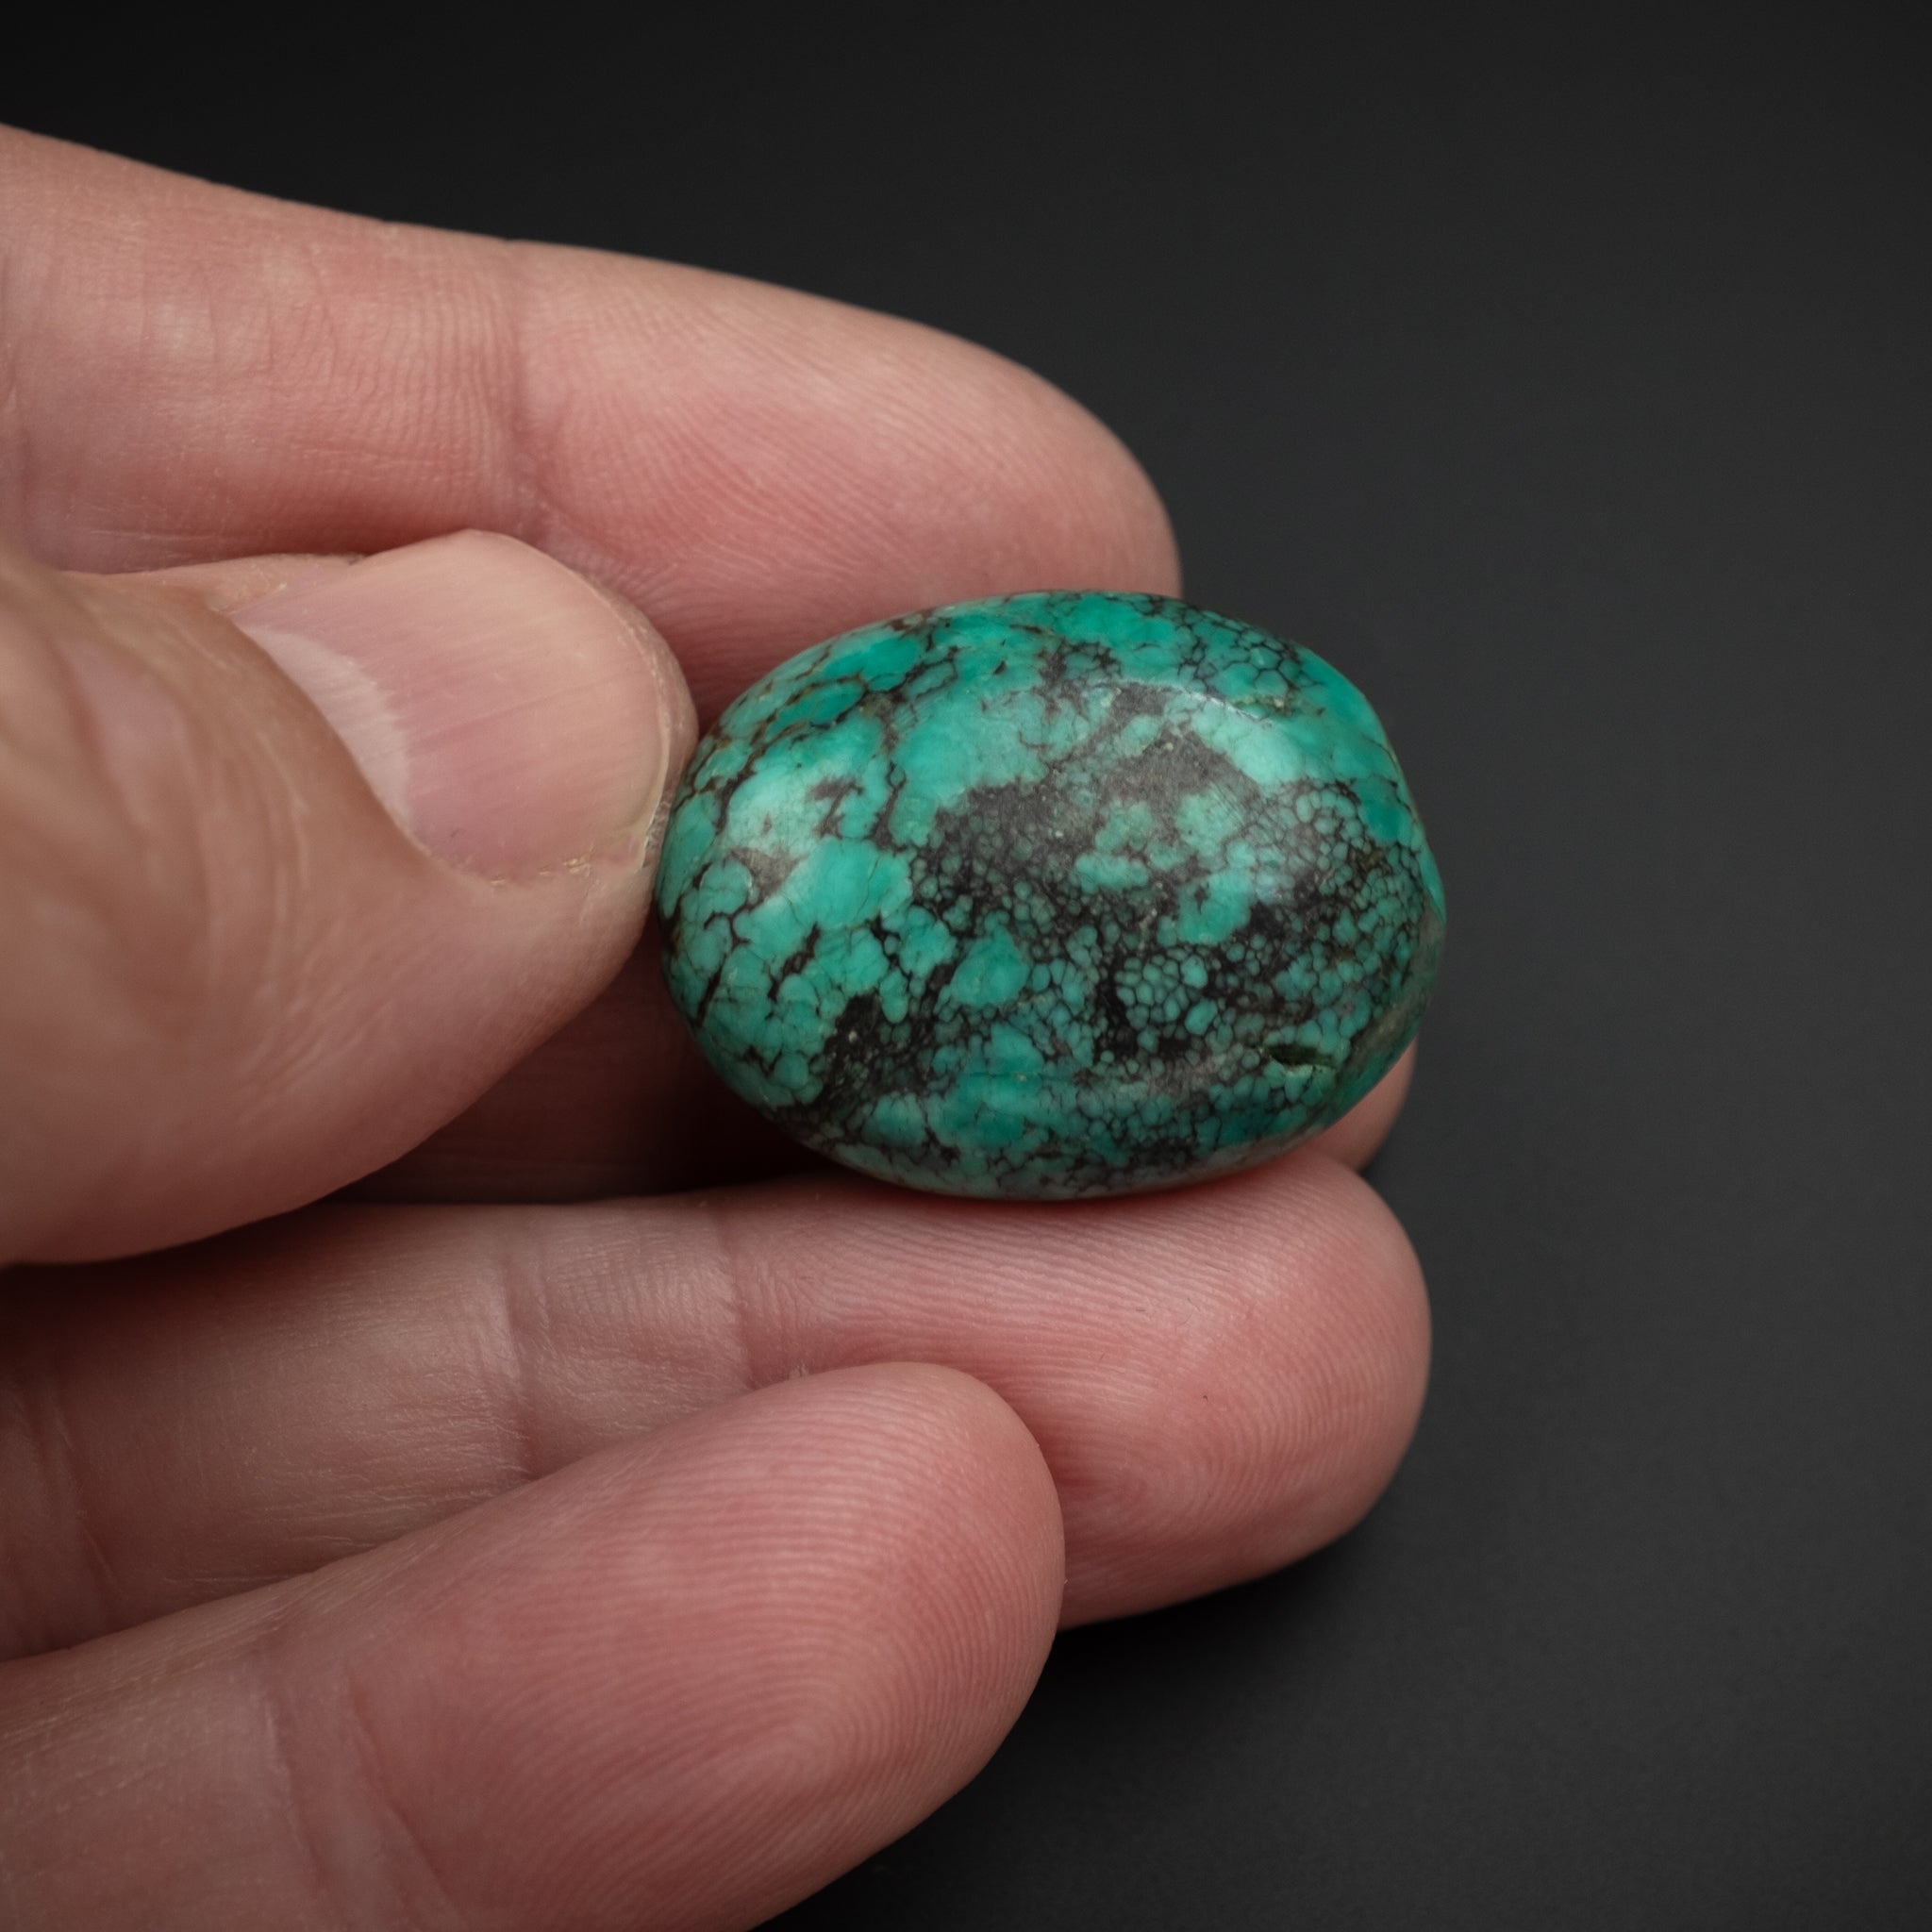 Antique Tibetan Turquoise Bead (11.3 g)